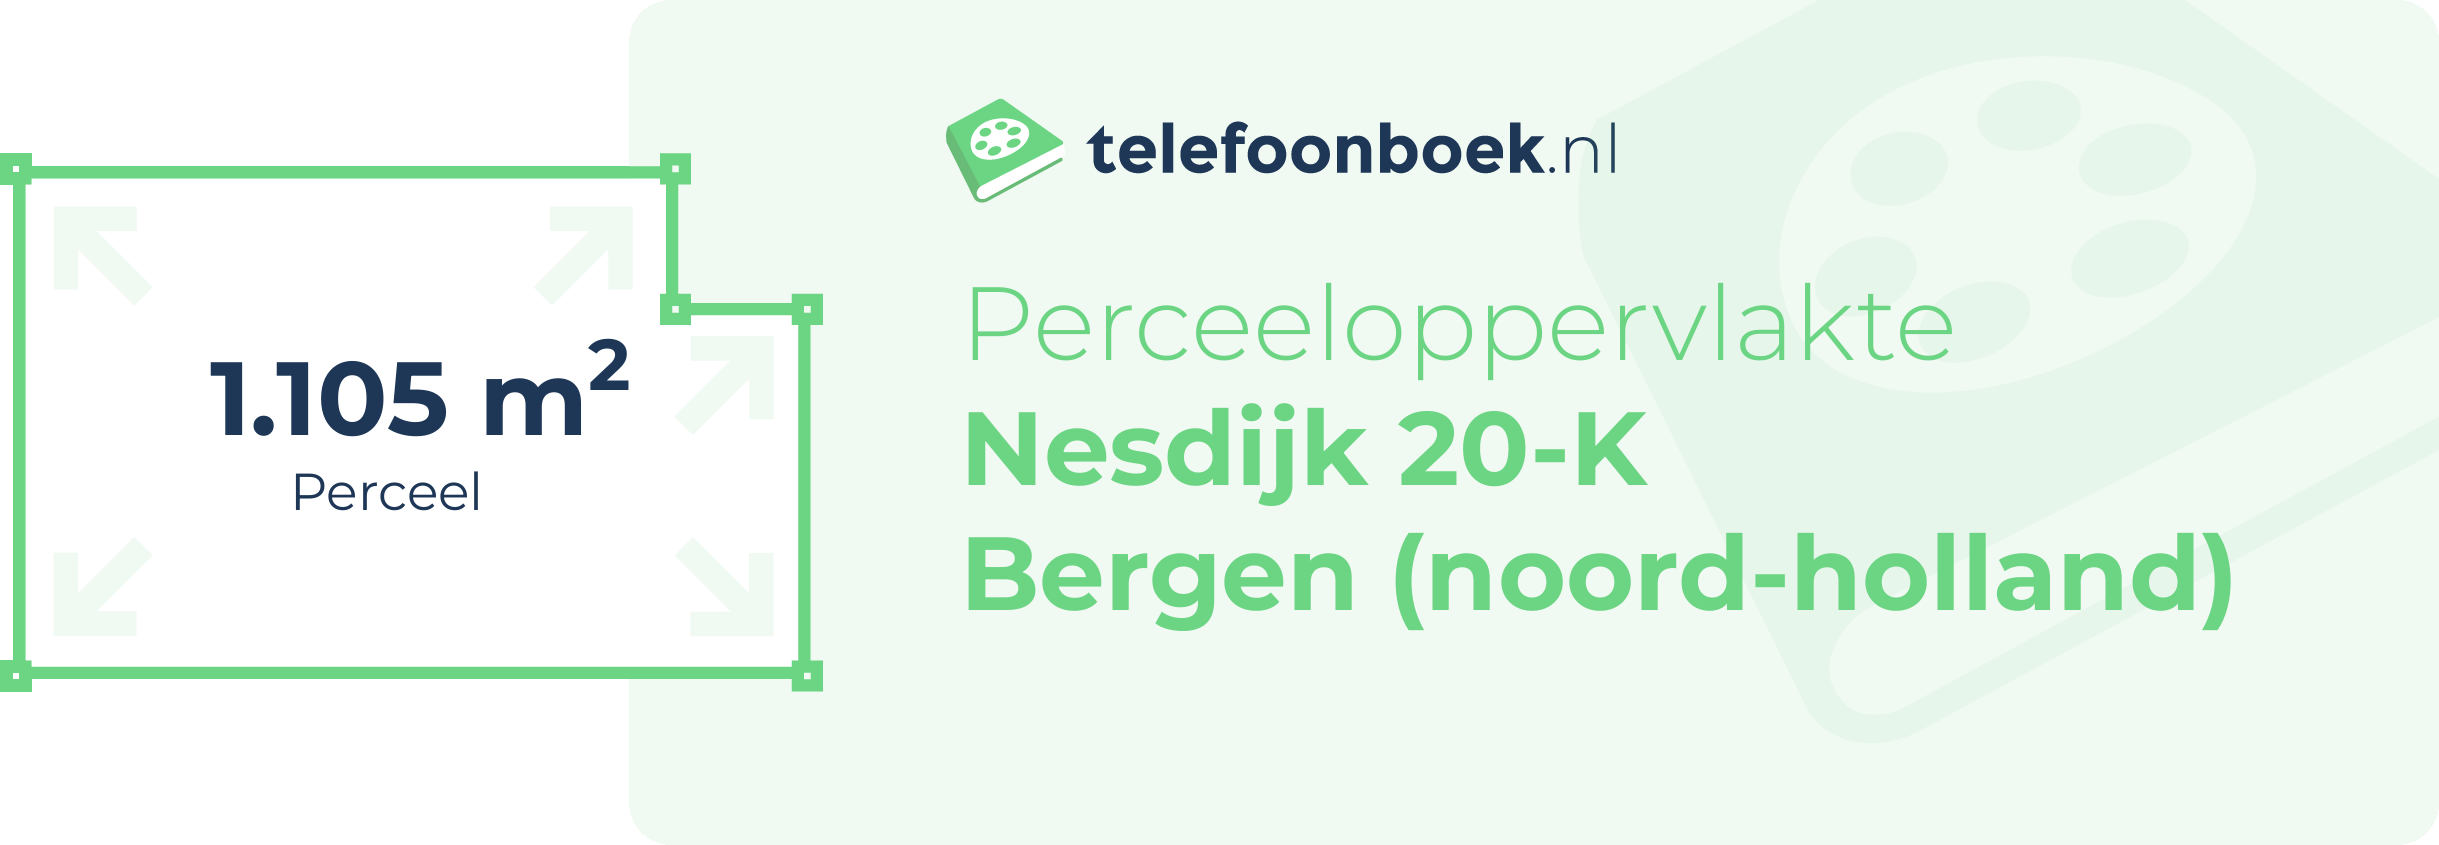 Perceeloppervlakte Nesdijk 20-K Bergen (Noord-Holland)